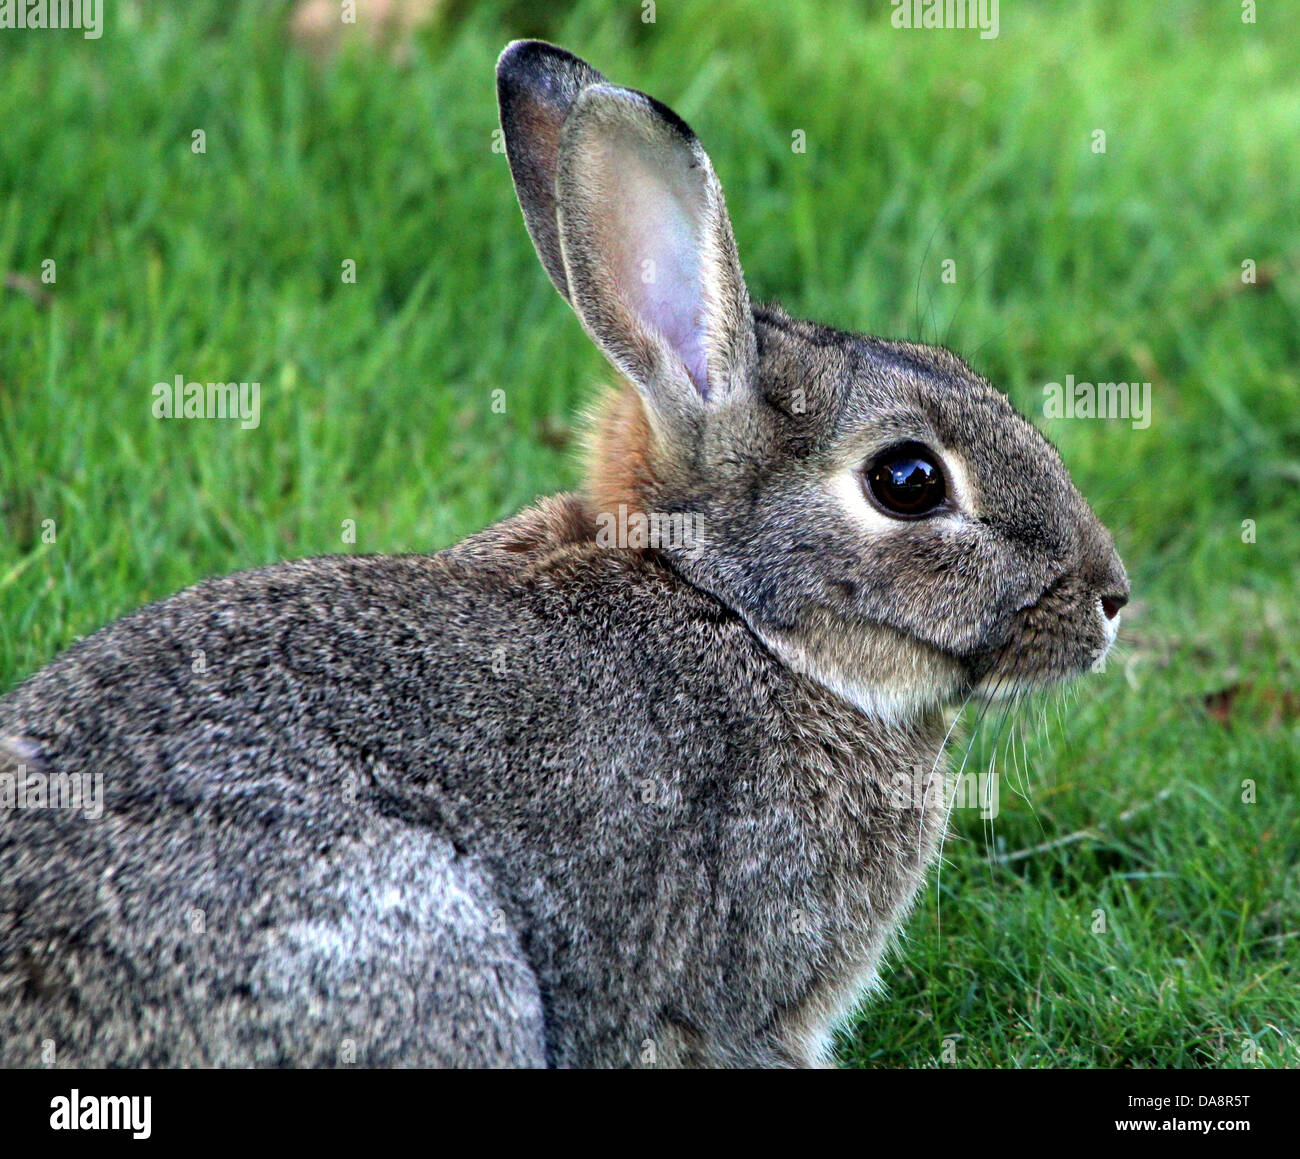 Europe le lapin (Oryctolagus cuniculus) portrait, vu de profil Banque D'Images